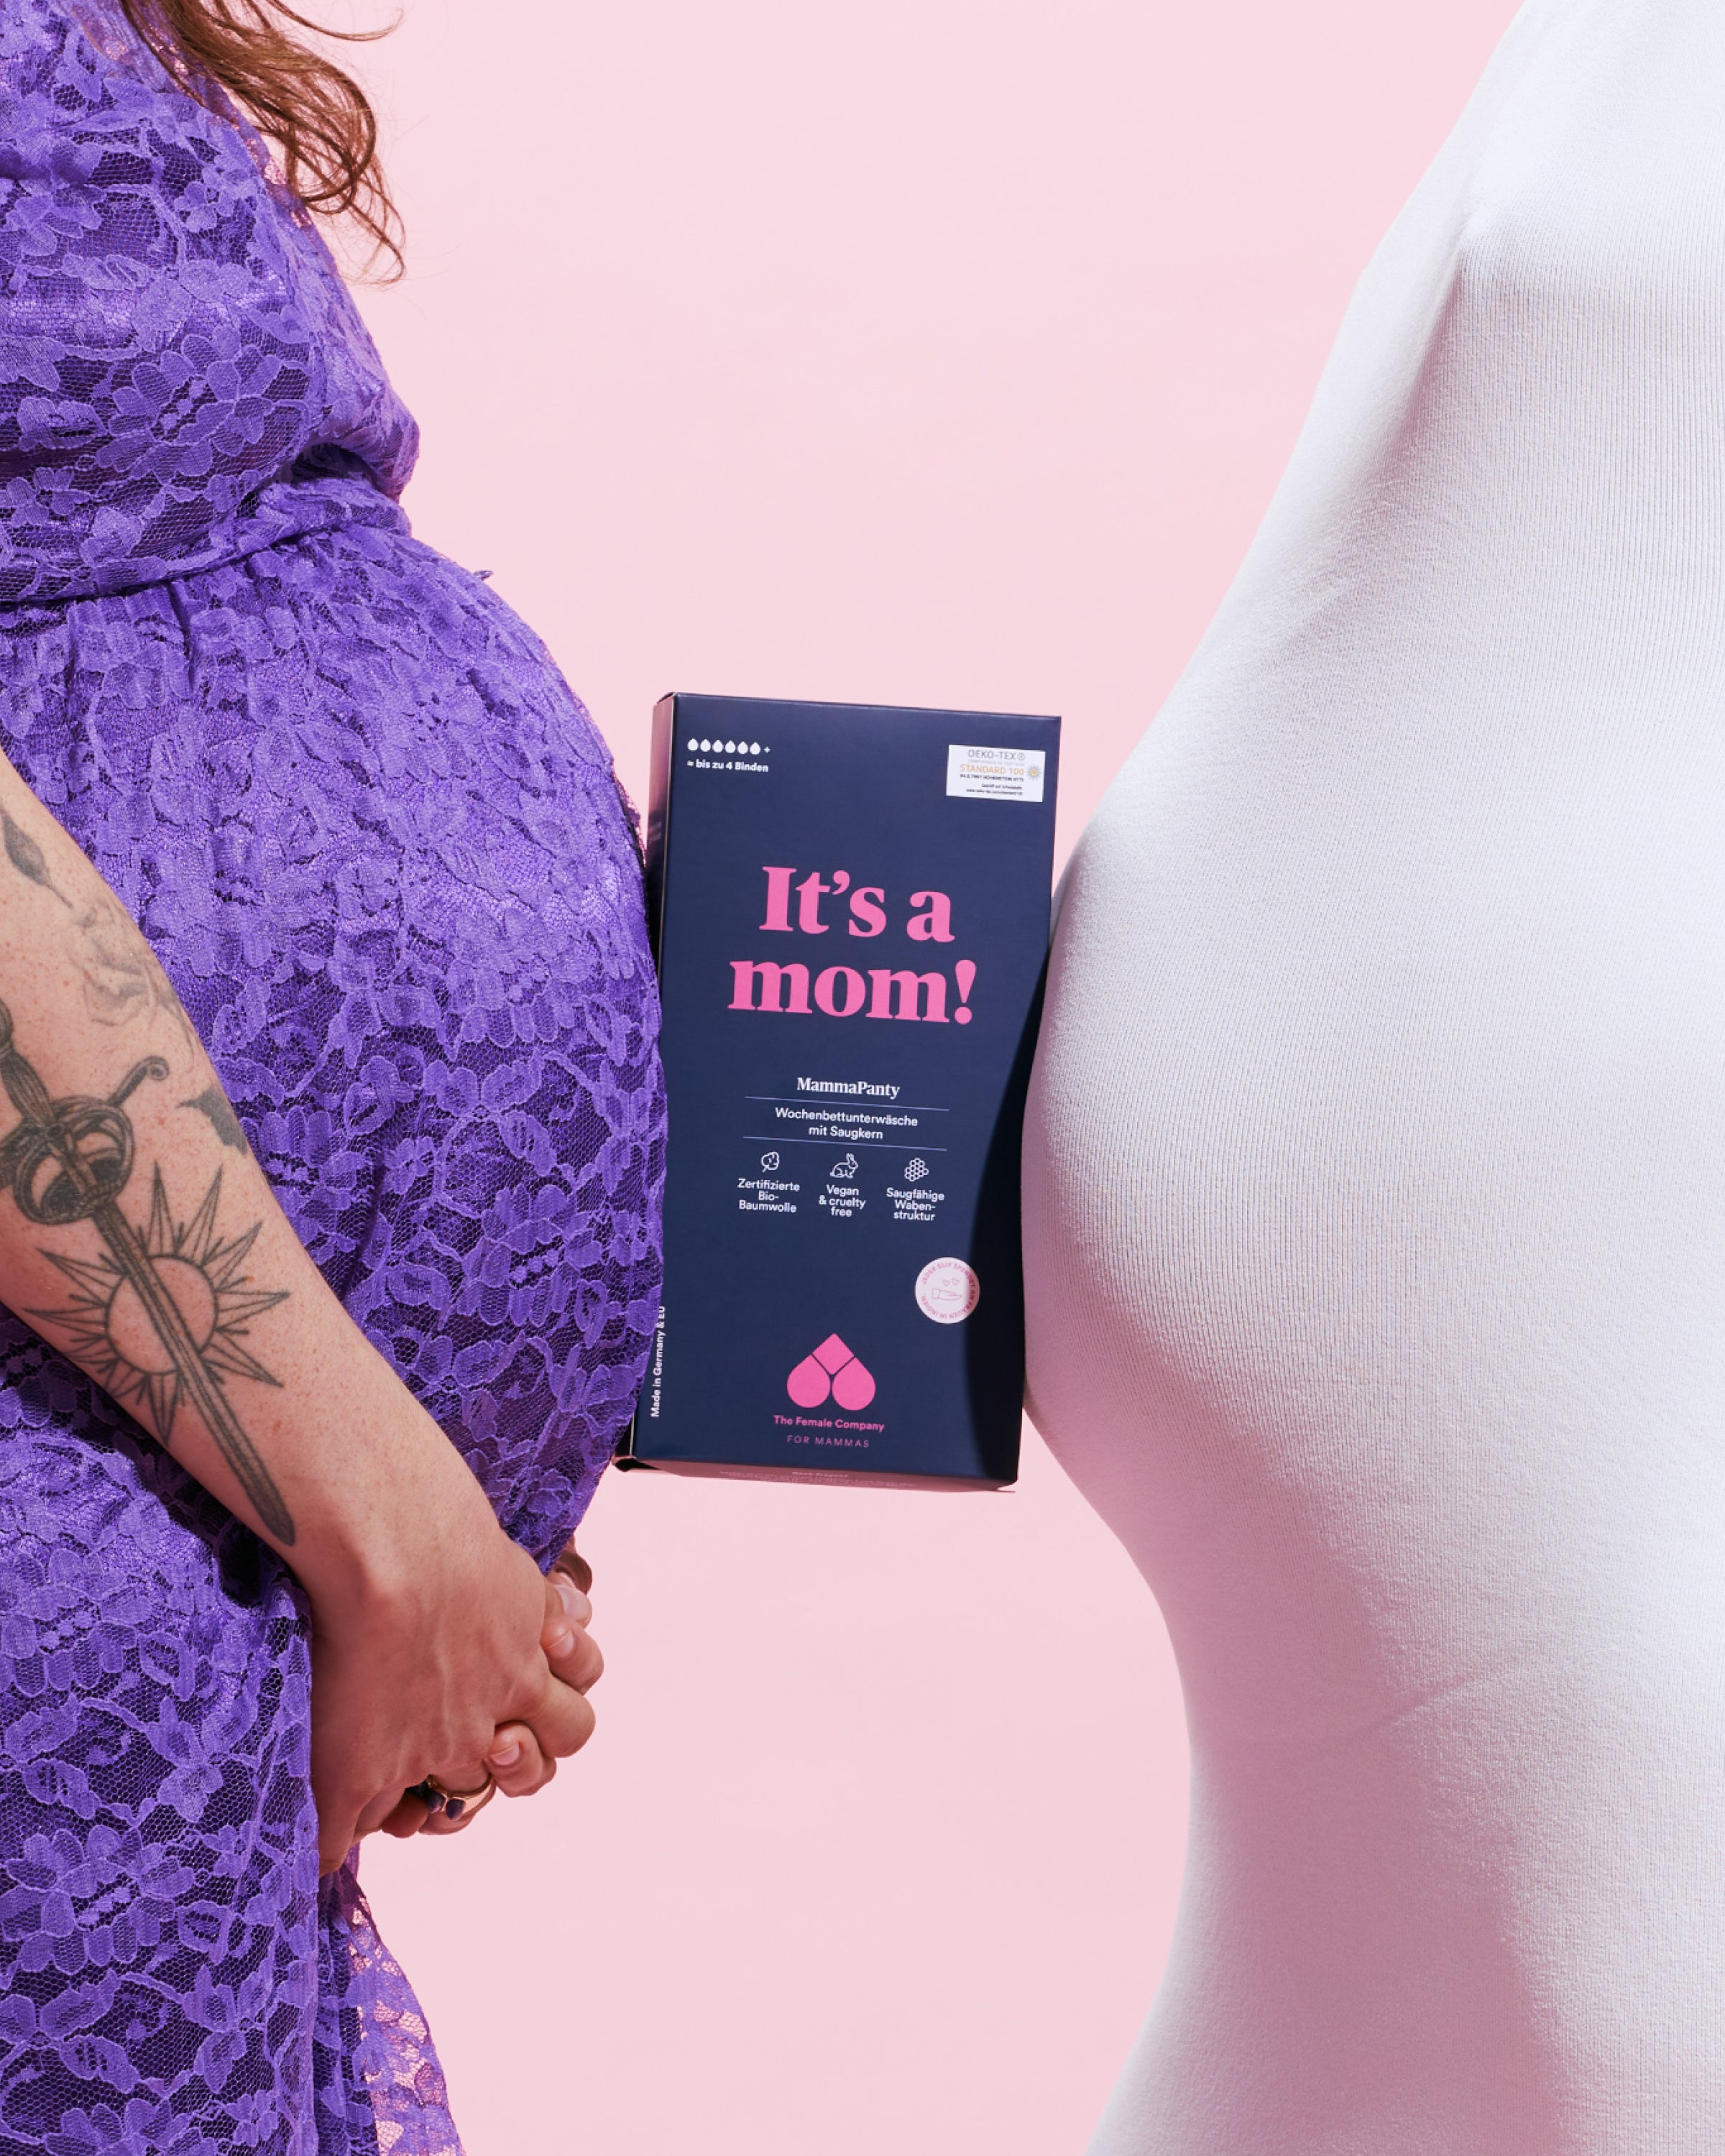 MammaPanty – Absorbent Maternity Underwear